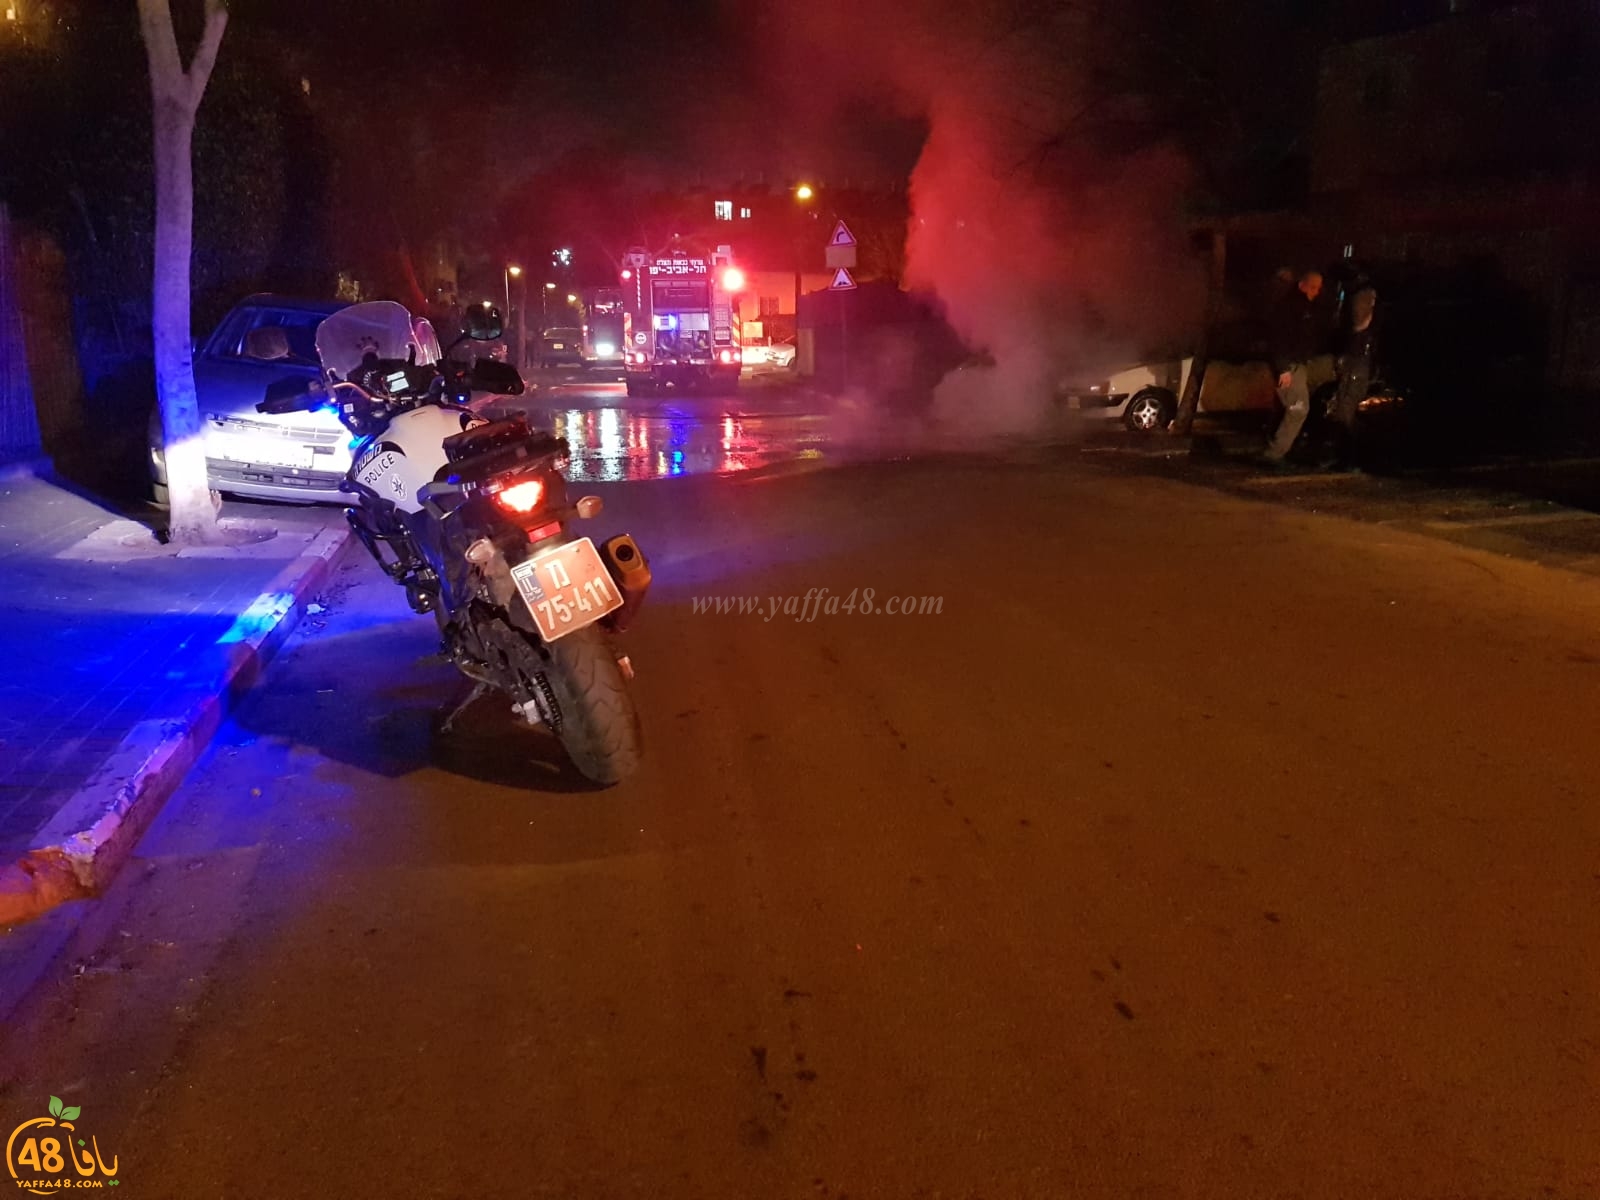  بالصور: حريق سيارة في مدينة يافا والاطفائية تهرع للمكان 